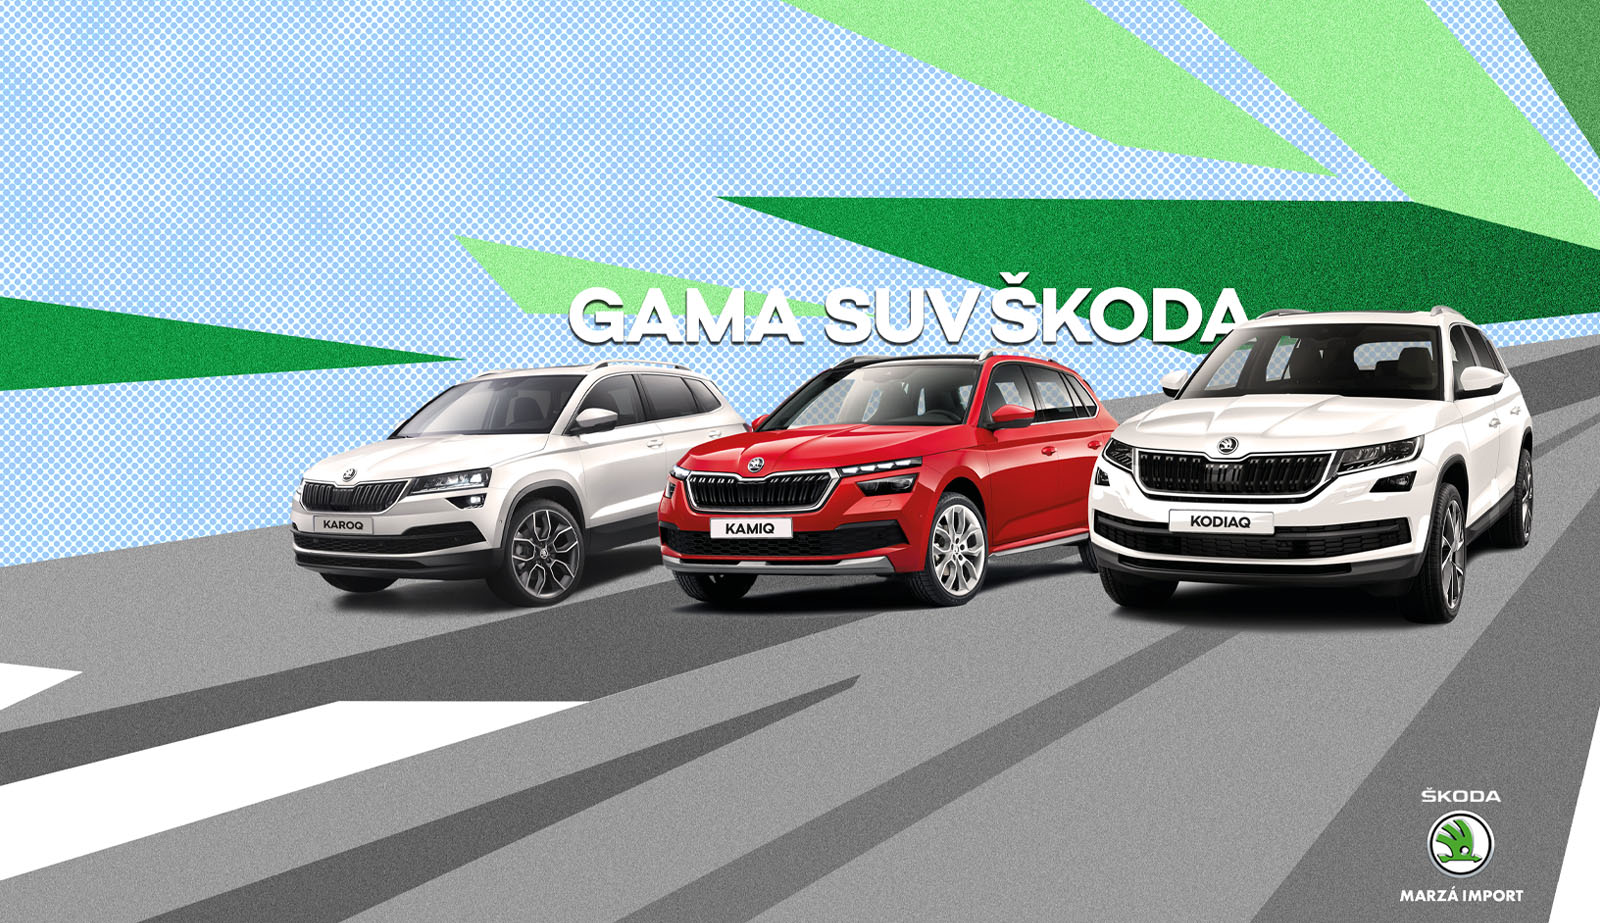 Gama SUV Skoda Marzá Import